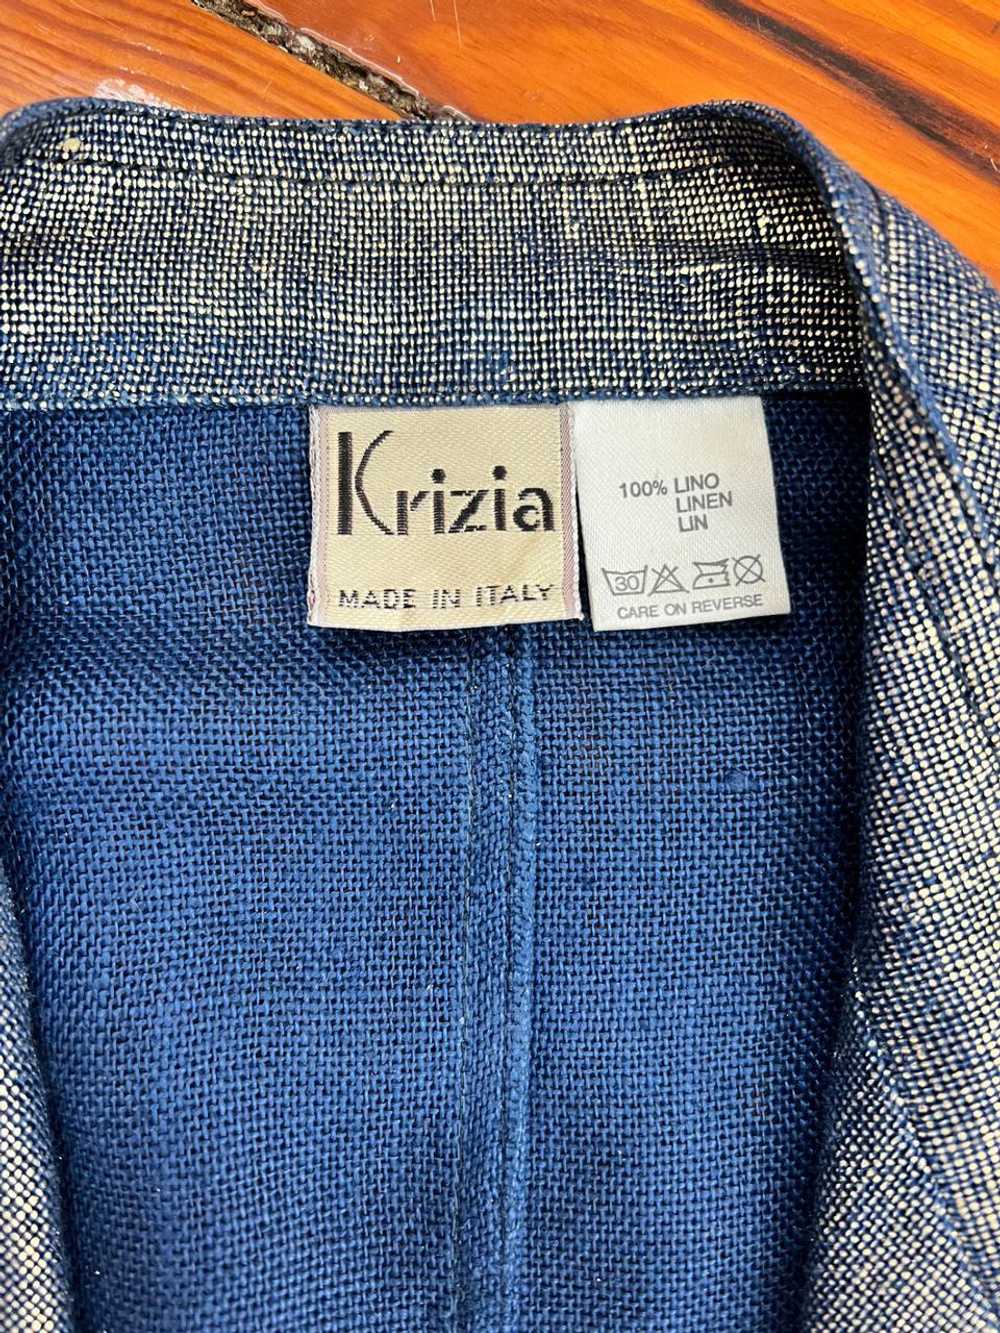 Krizia gold linen two piece pantsuit size 42/M (4… - image 4